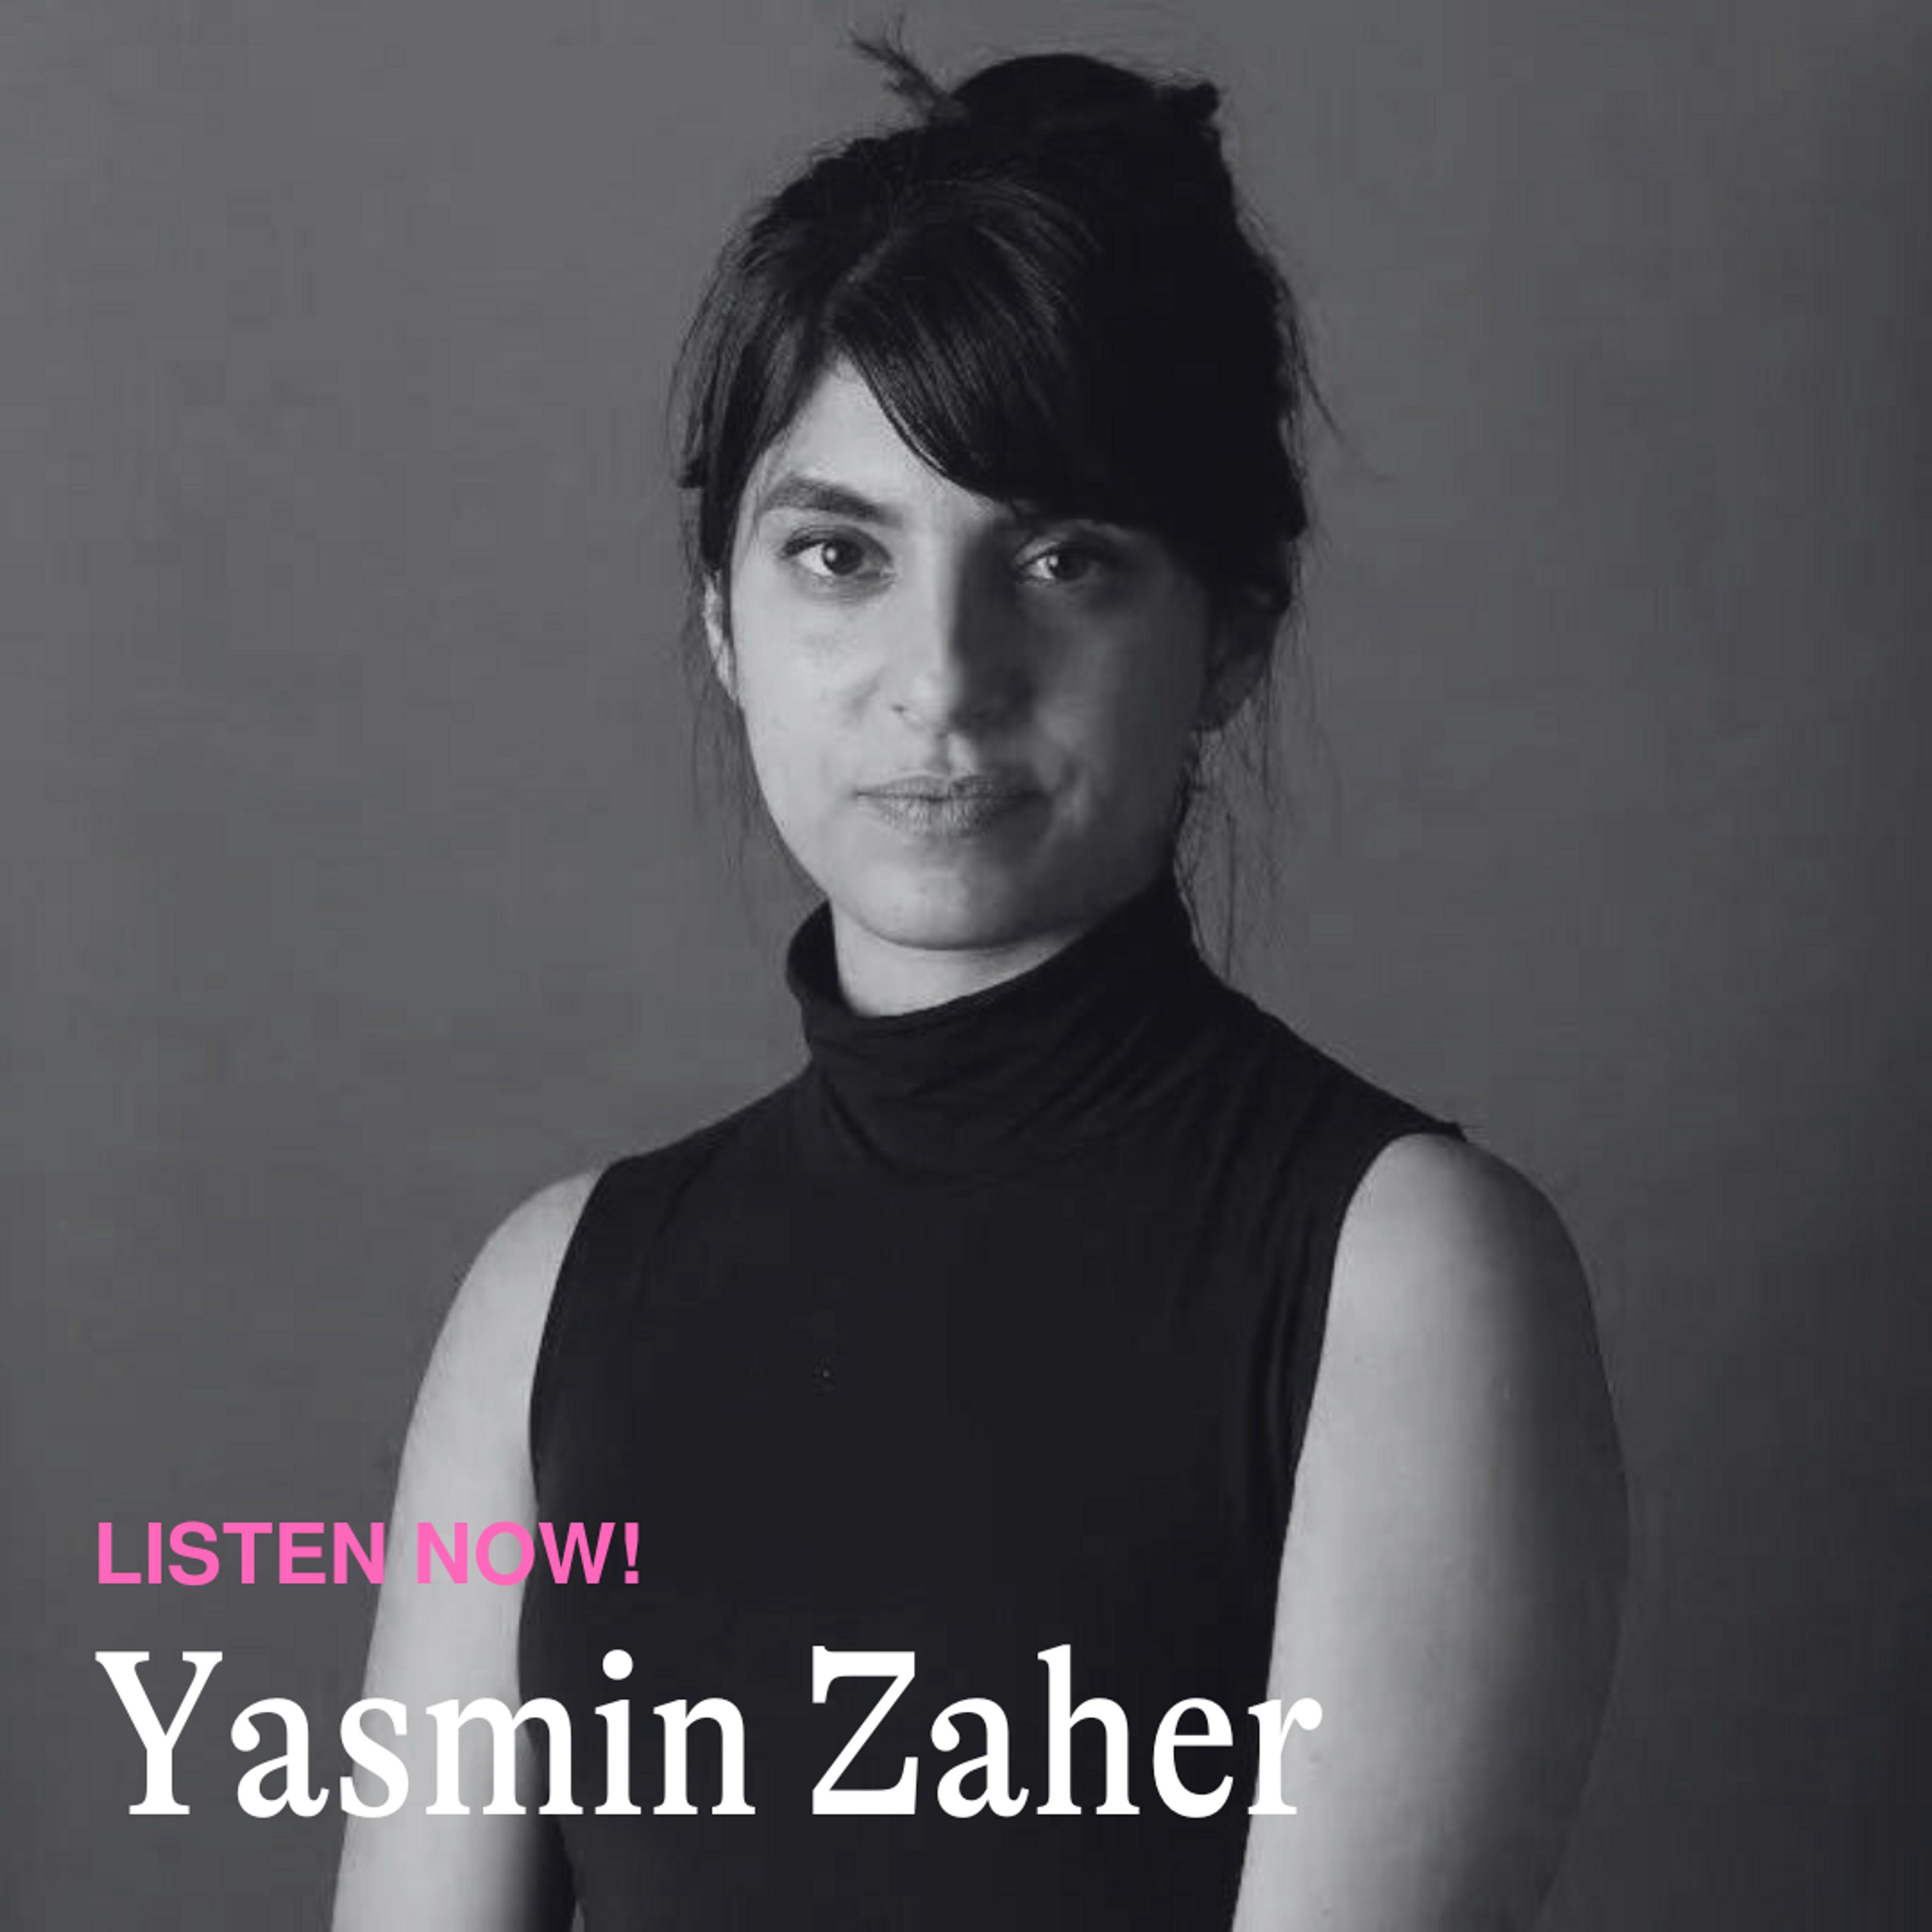 Yasmin Zaher’s “The Coin”